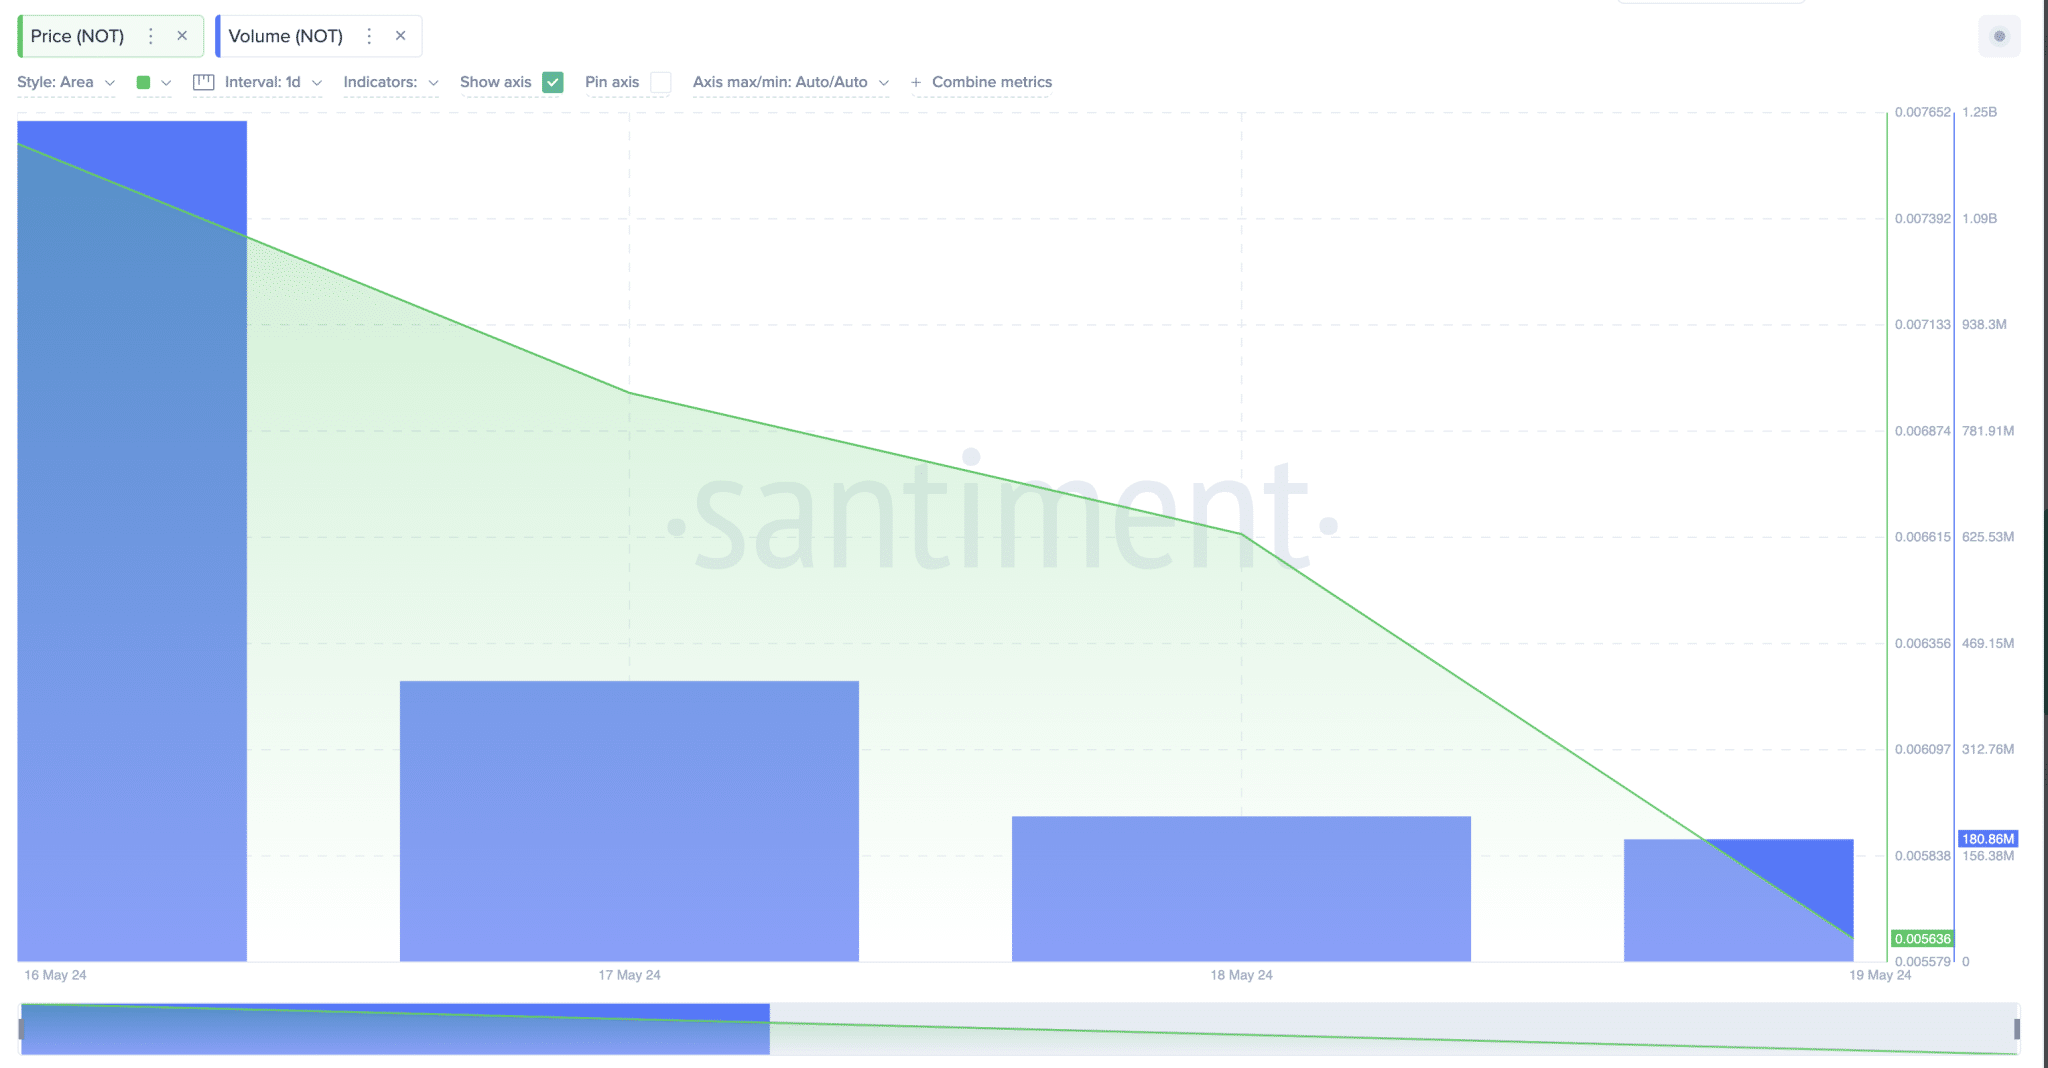 Notcoin Price vs NOT Token Trading Volume | Santiment